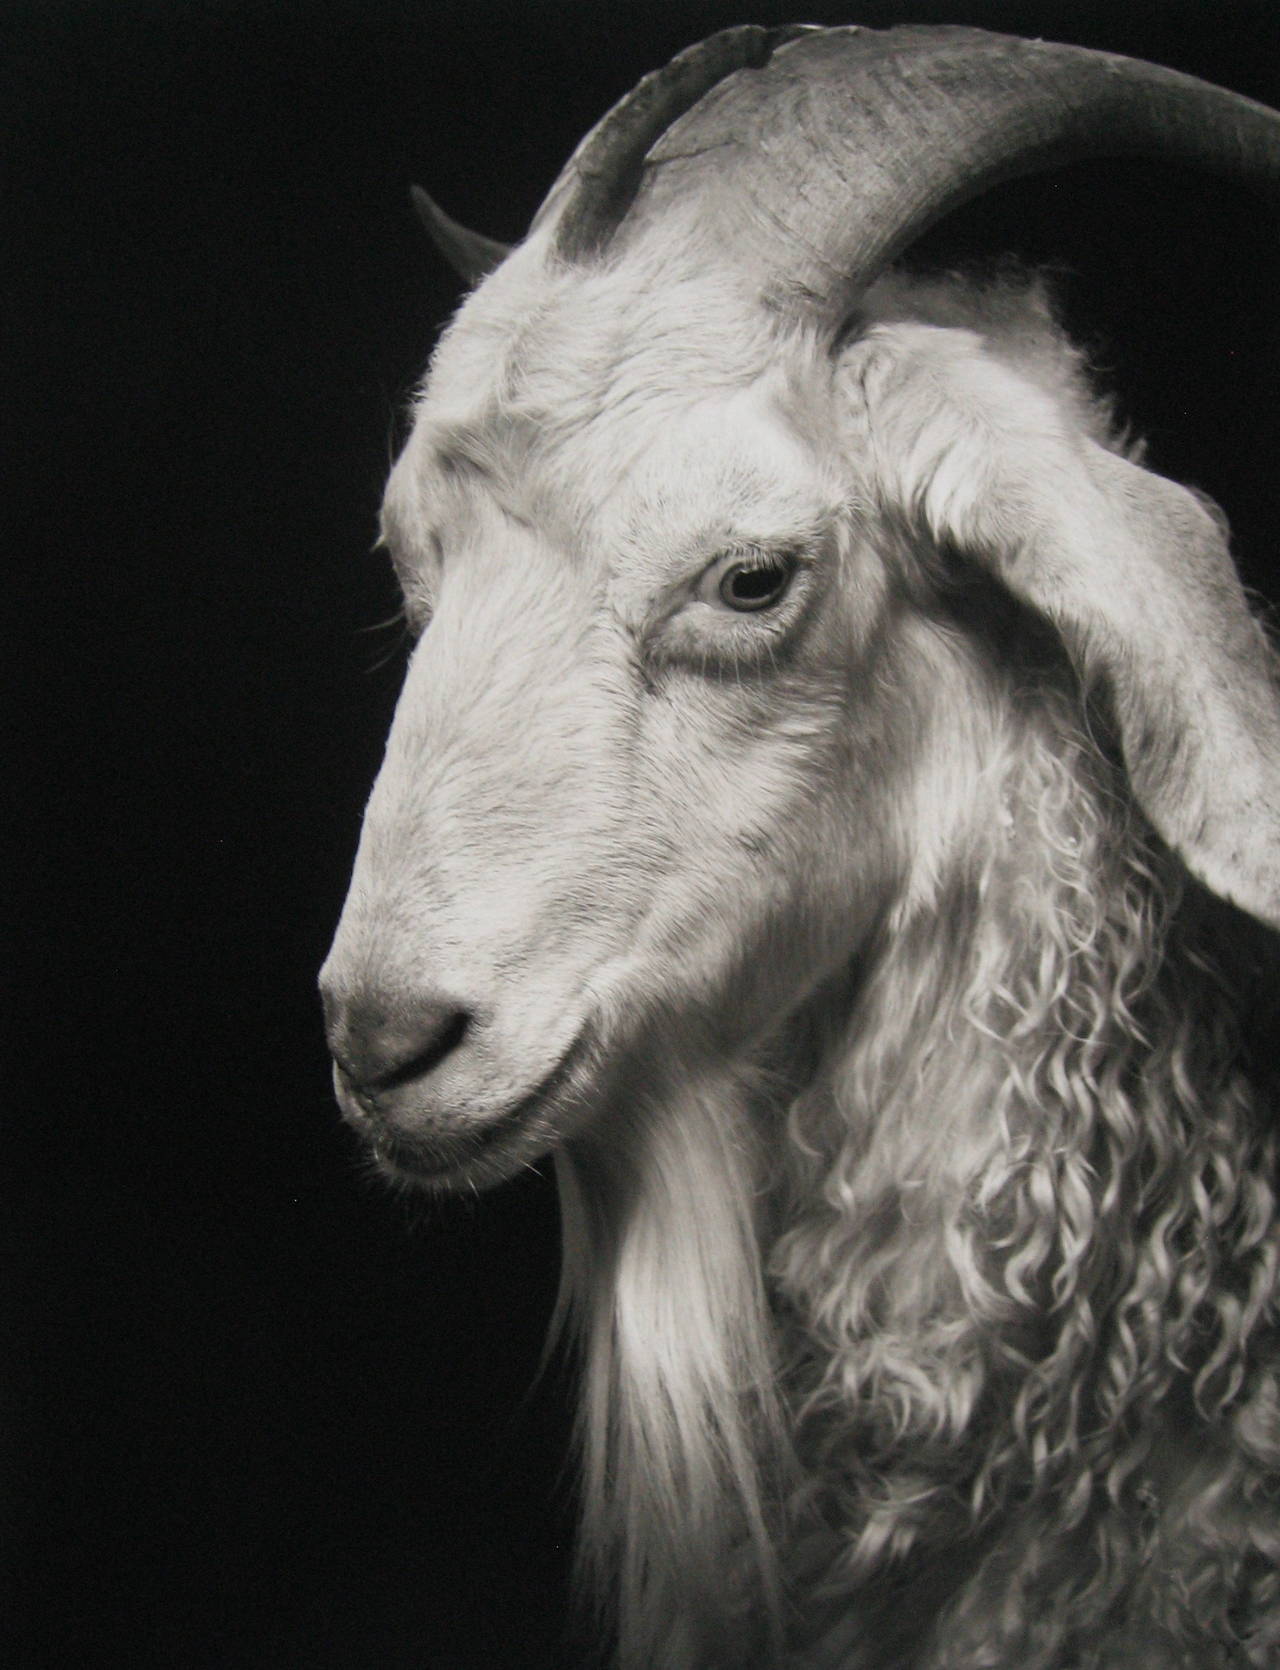 Sydney #1 von Kevin Horan zeigt das Porträt einer weißen Ziege mit lockigem Haar und langem Ziegenbart. Dieses Foto ist als 14 x 11 Zoll großer archivierter Pigmentdruck aufgeführt, wobei das Papierformat 17 x 13 Zoll beträgt. Sie ist in einer